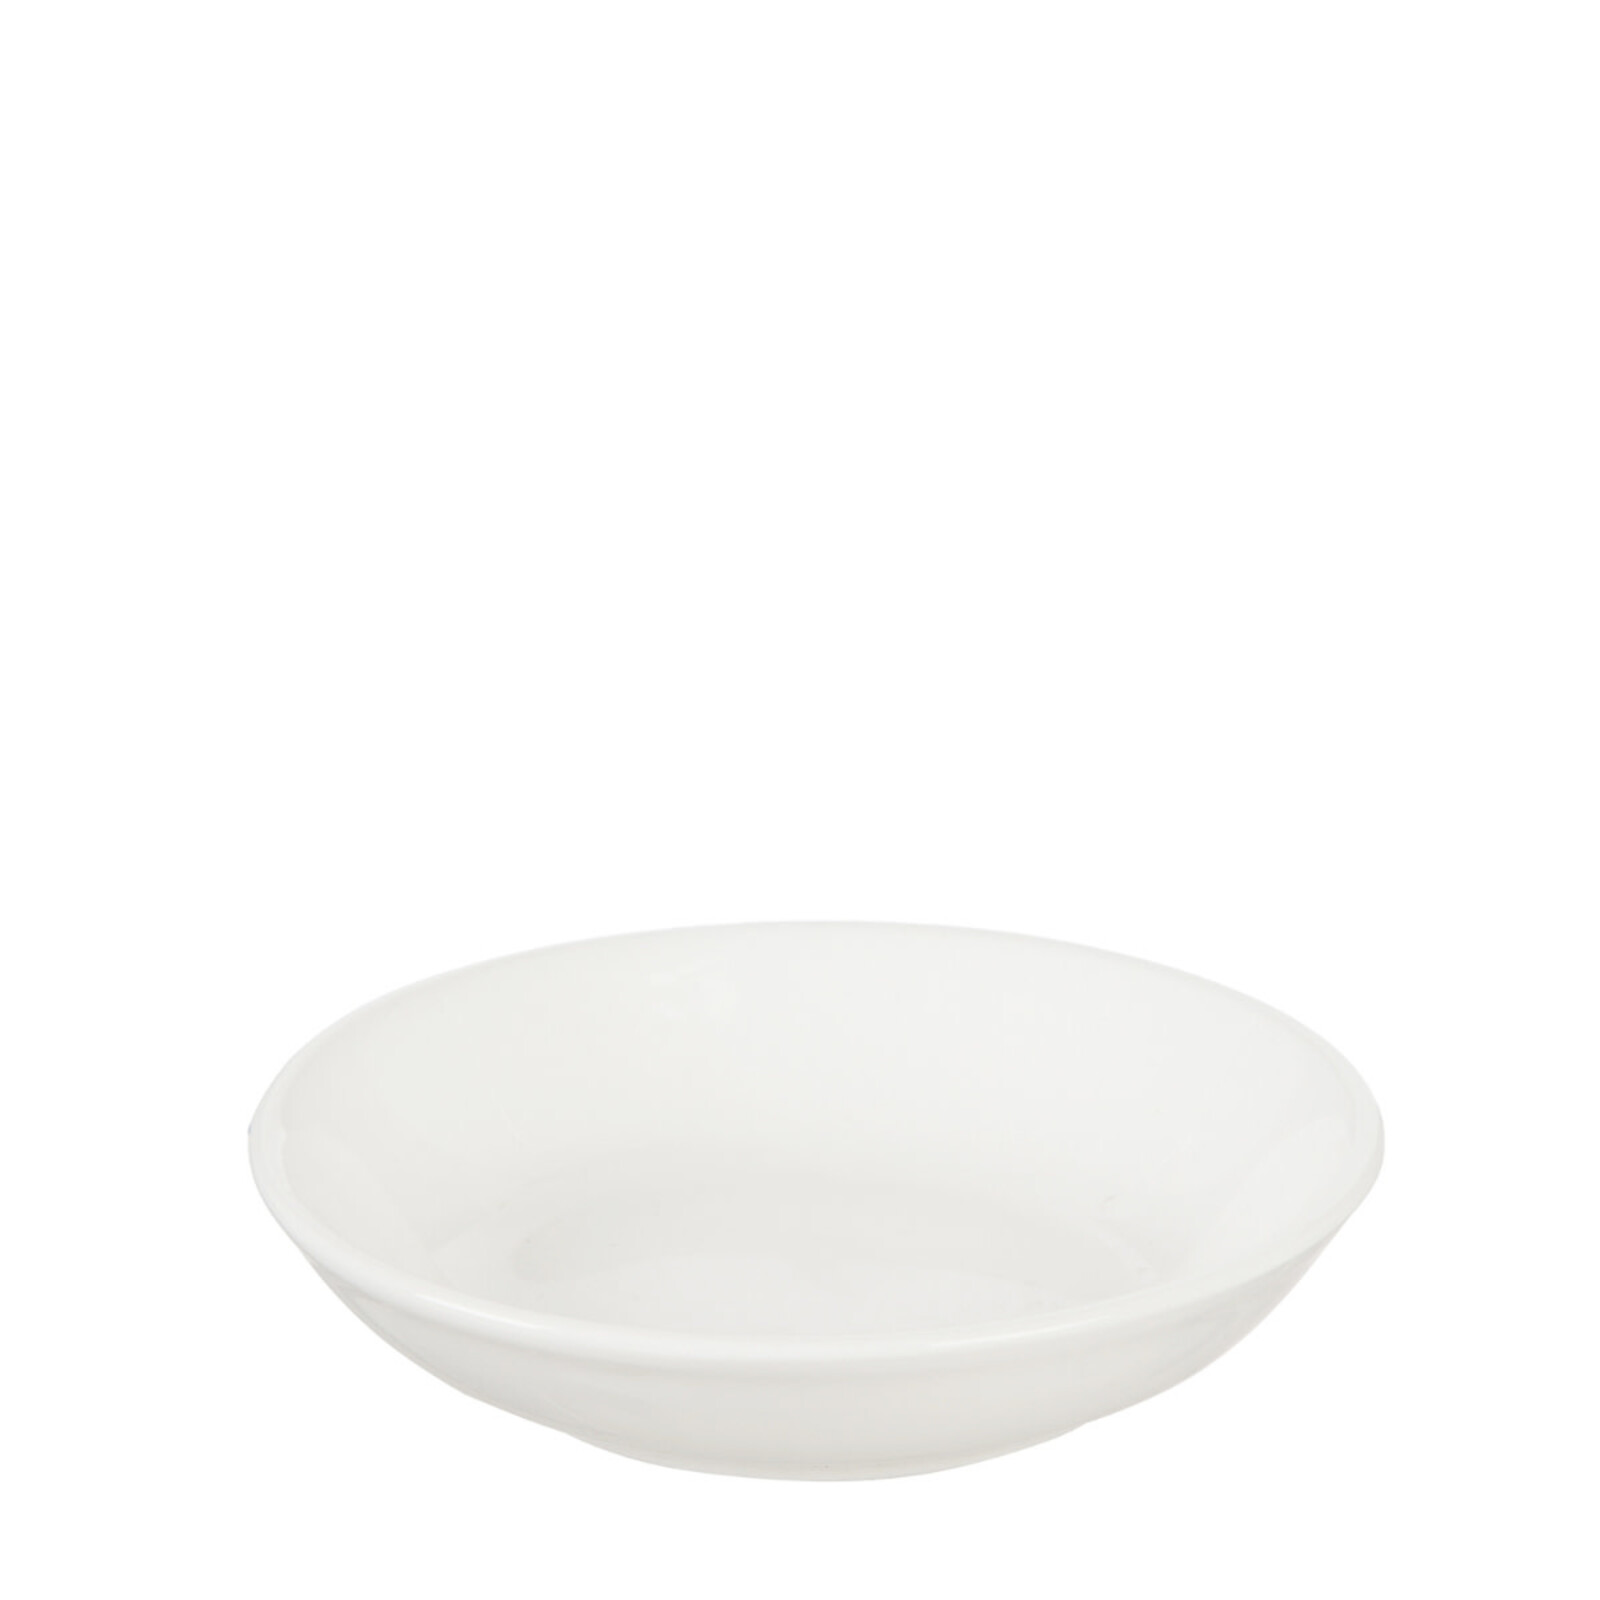 Evergreen Enterprises Ceramic Succulent Trinket Dish Diffuser 7DF027 loading=